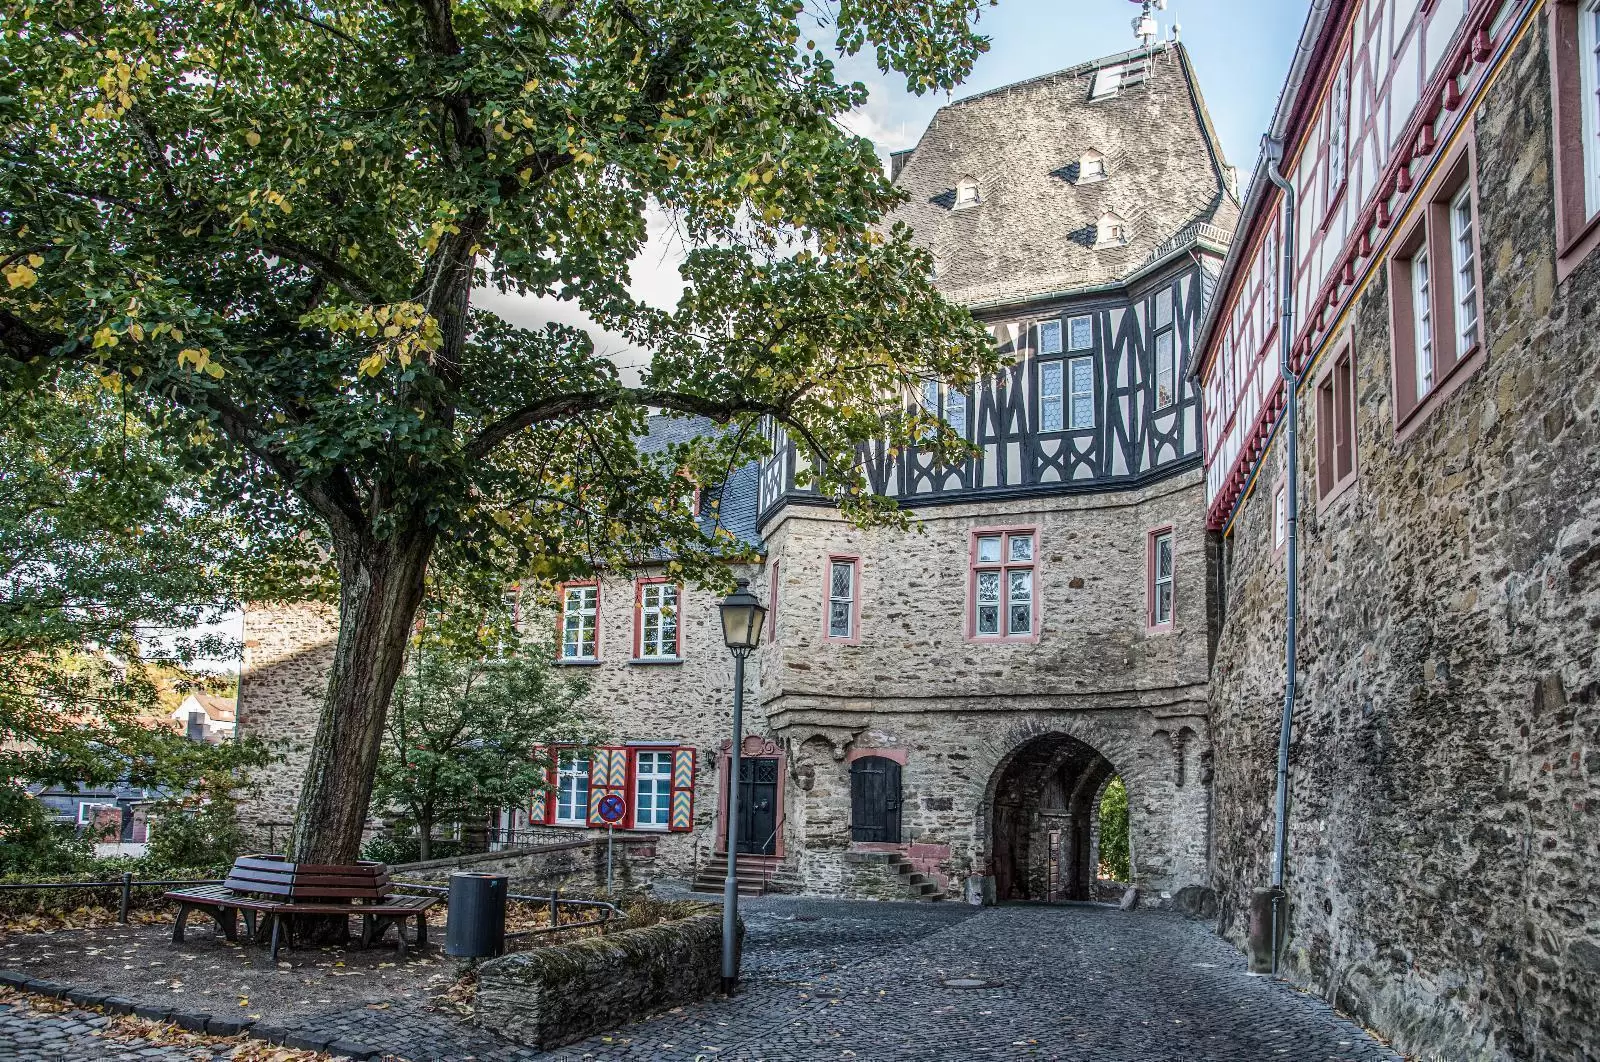 Idstein Castle Gate